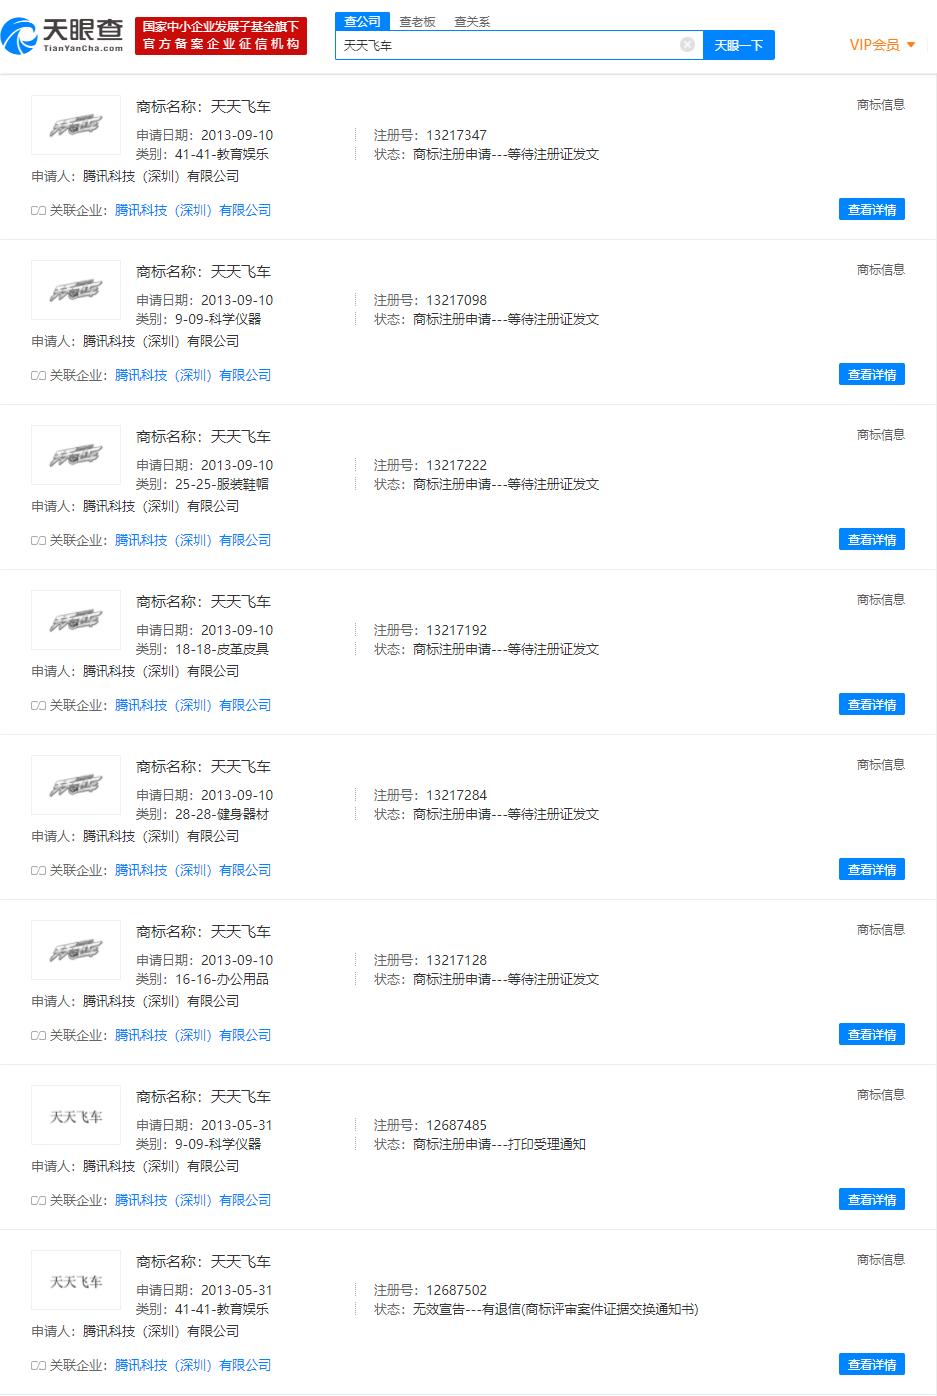 天天飞车宣布停服 相关商标于2013年申请注册